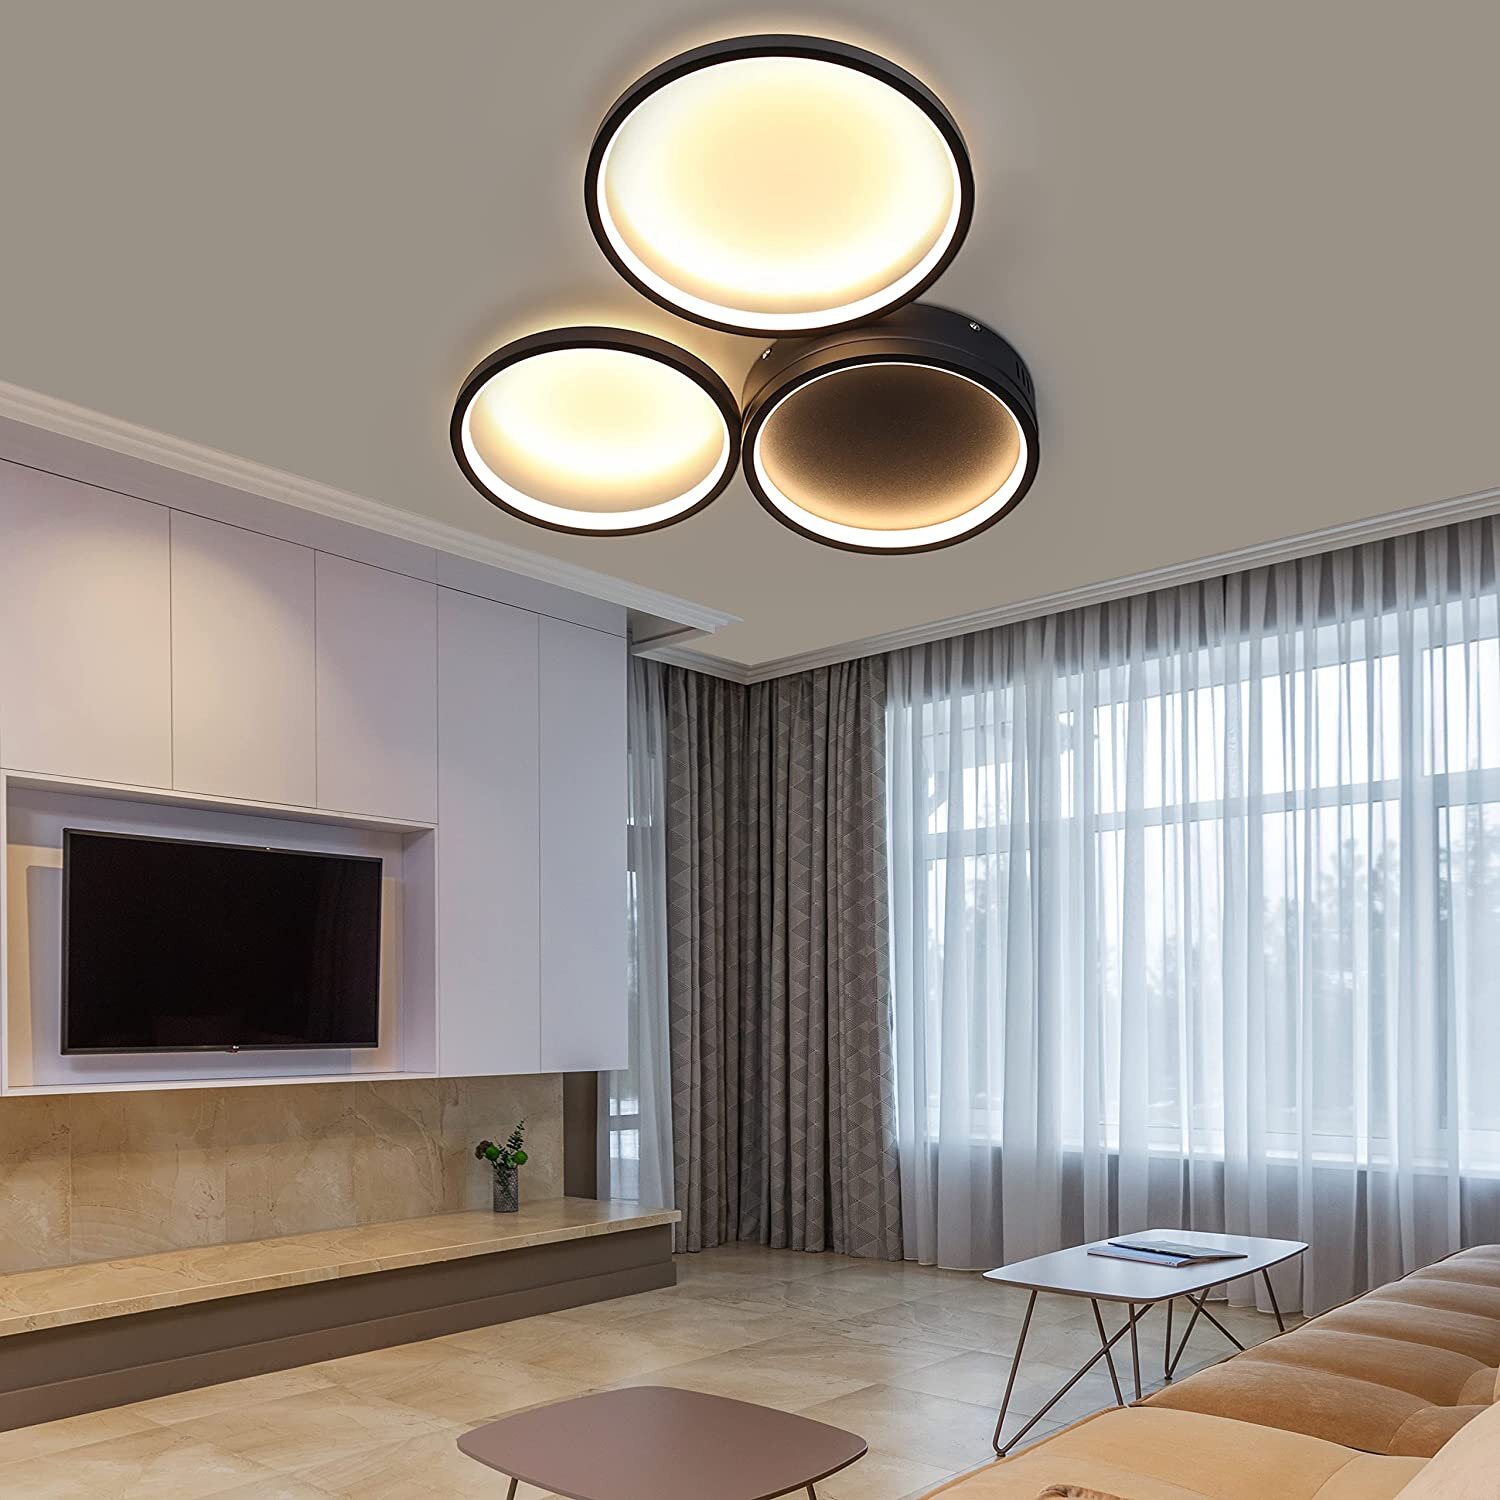 LED Deckenlampe Deckenleuchte warmweiß modern Wohnzimmer Küche Beleuchtung Lampe 